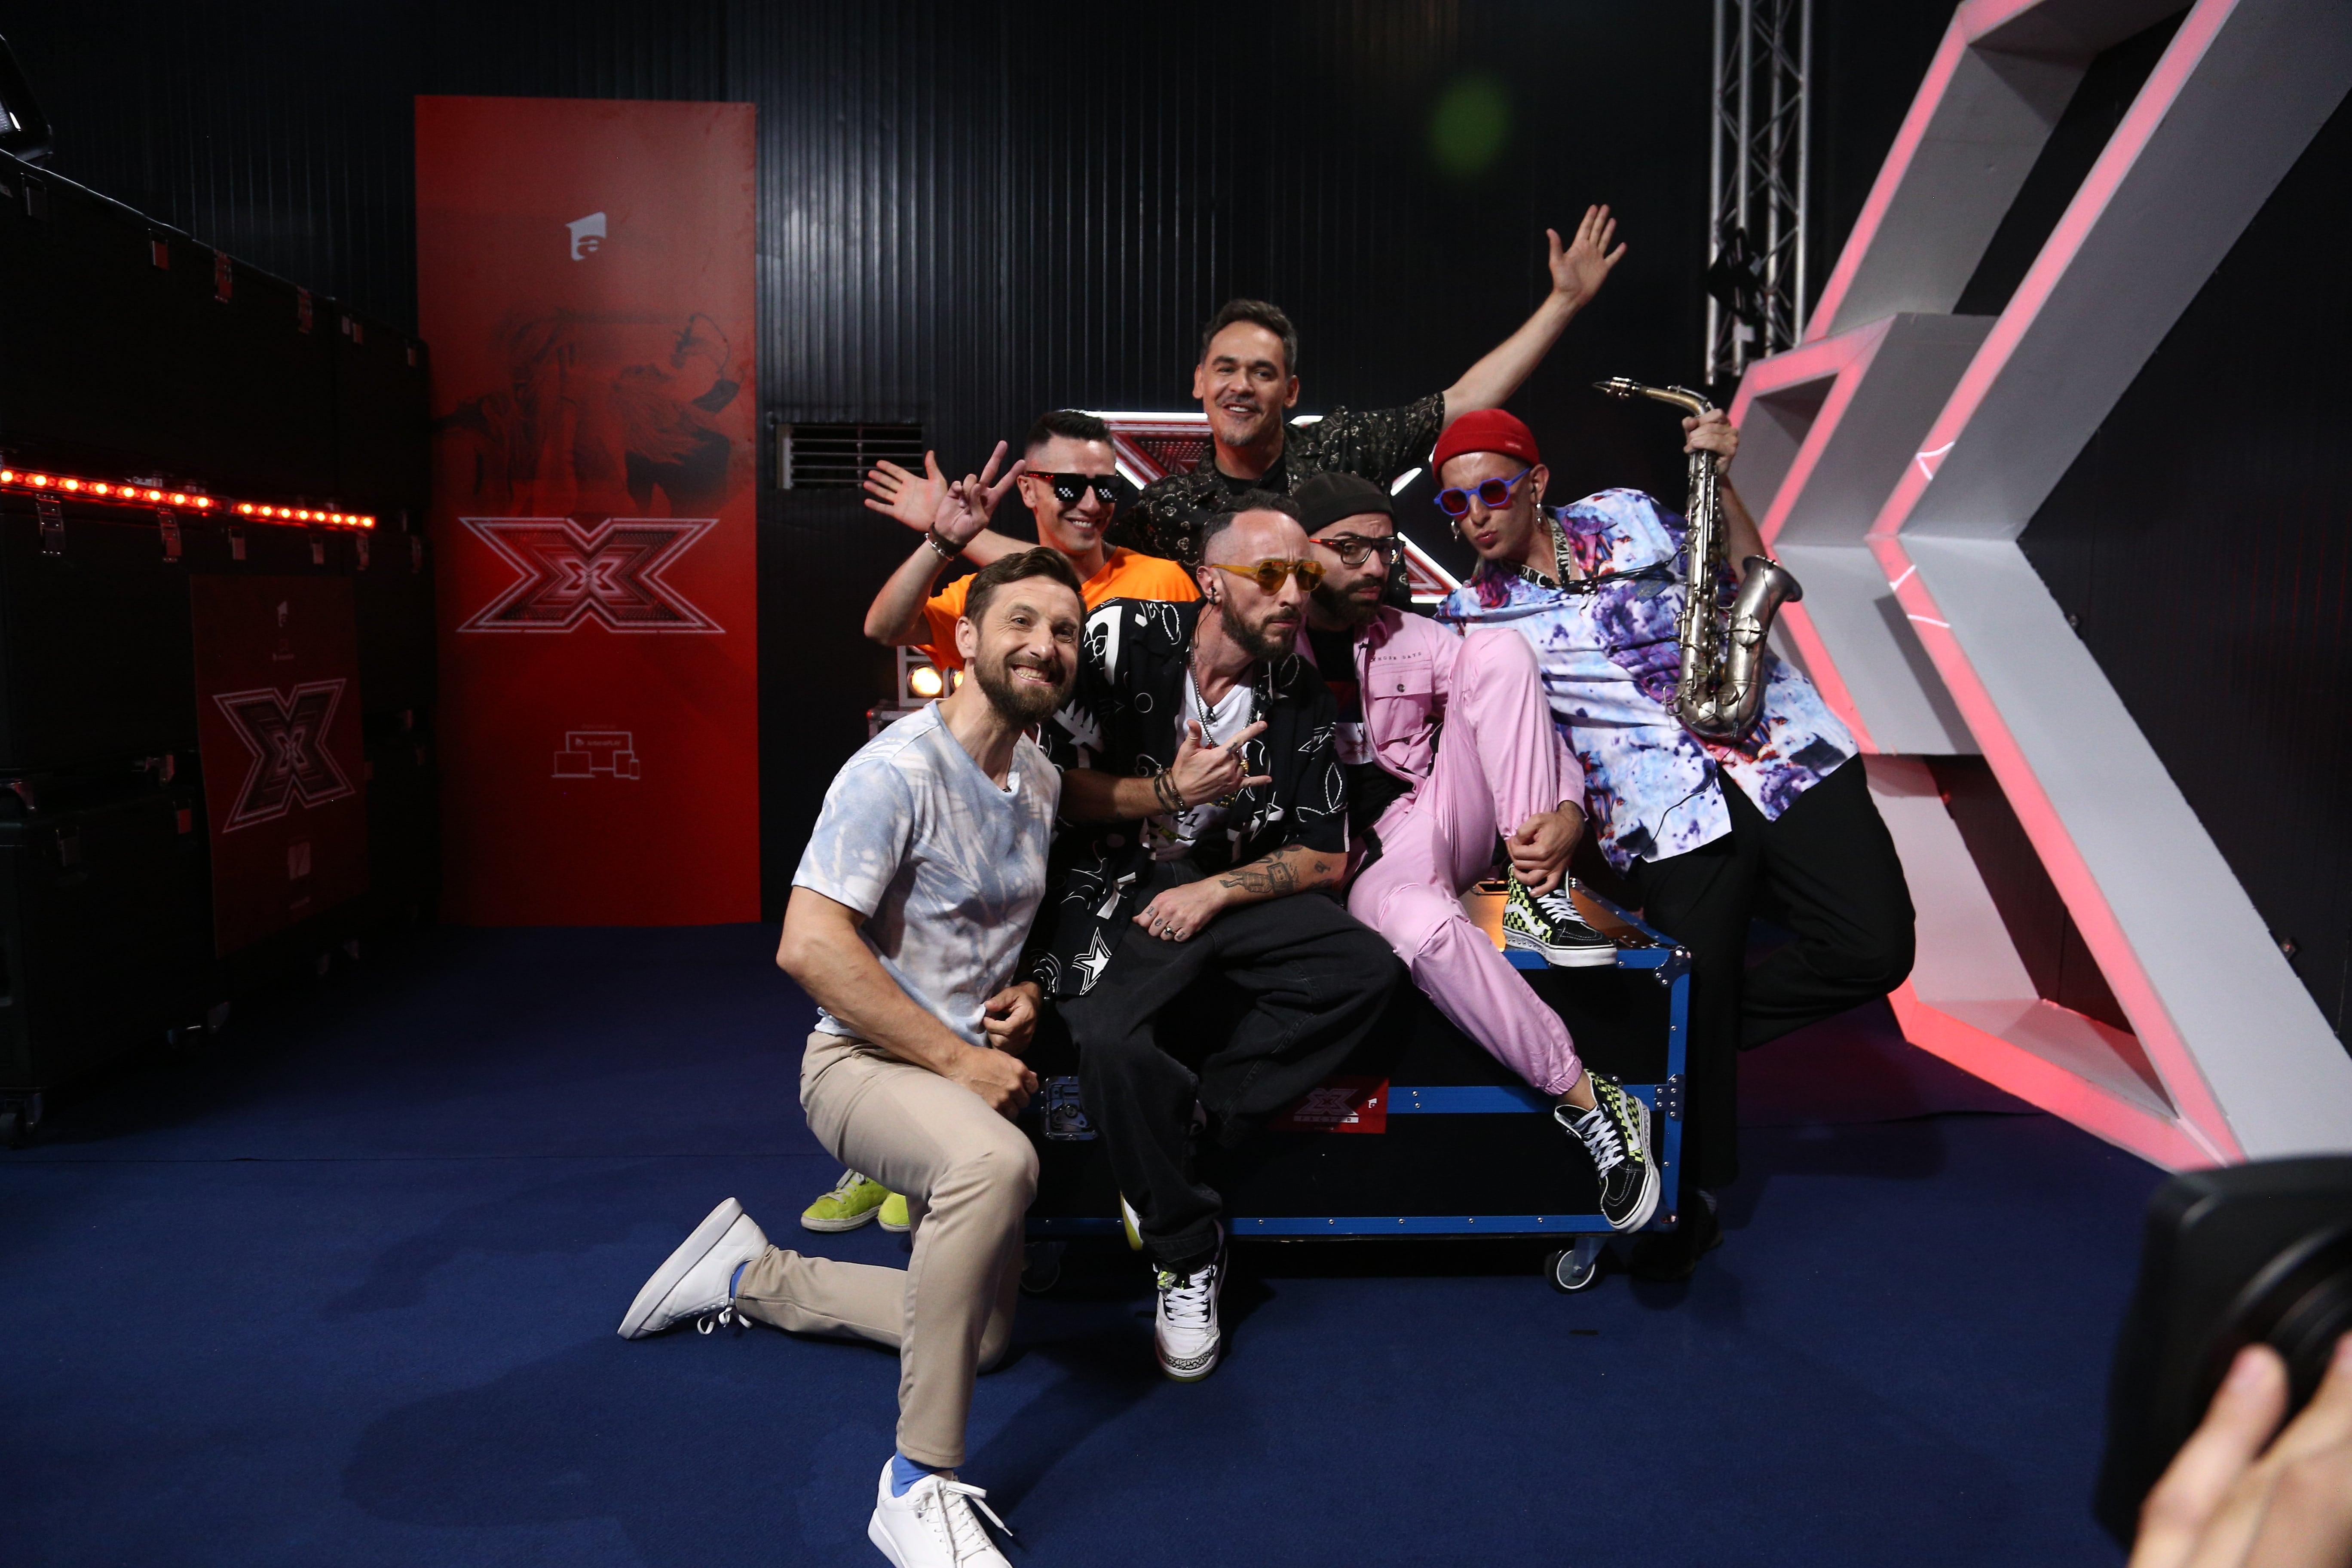 Le teste di Ozzak și-au inventat propriul gen muzical și au fost felicitați de jurații X Factor 2021